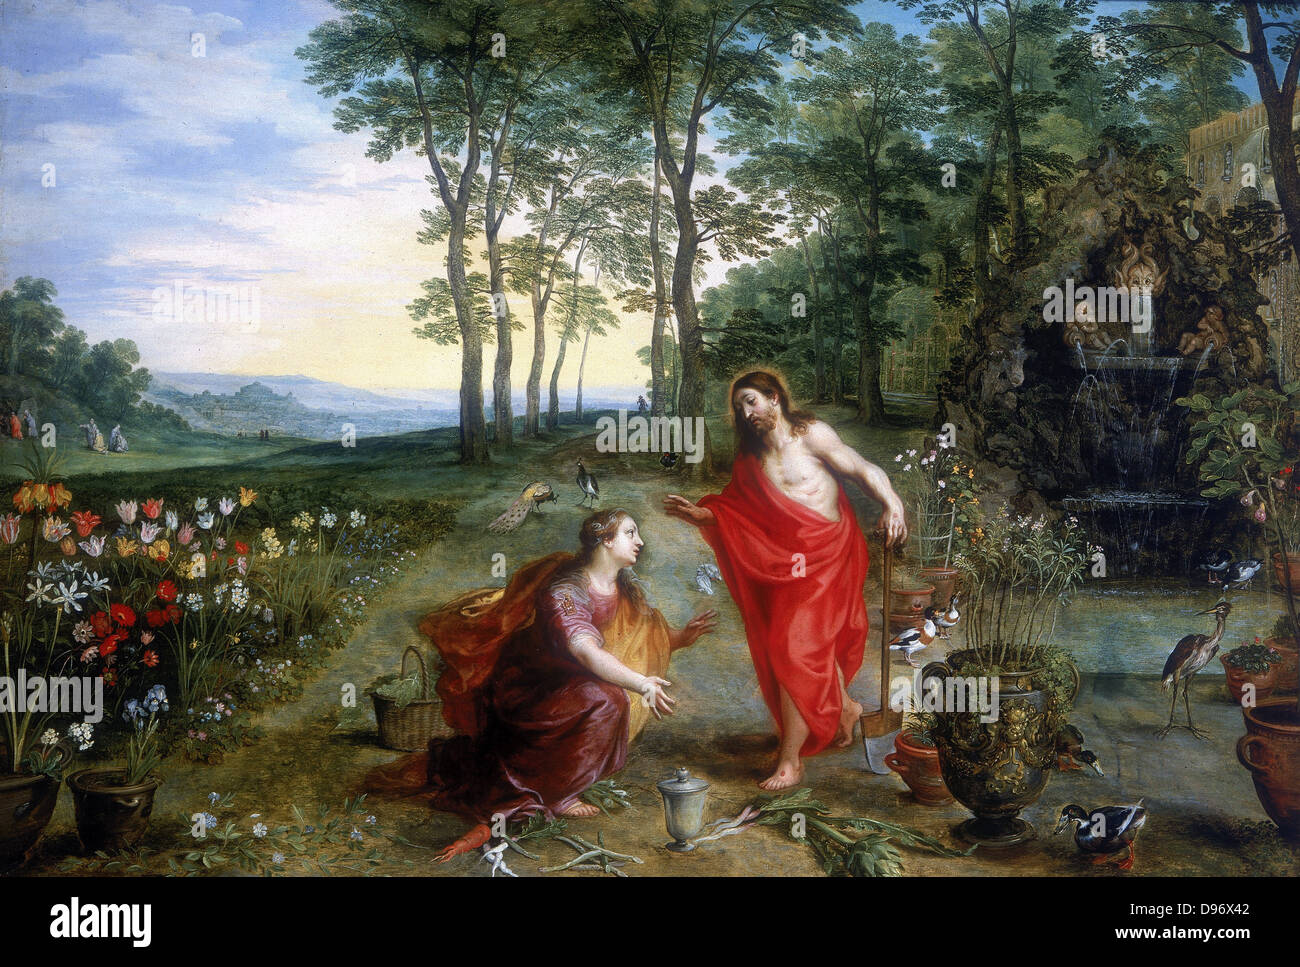 Noli me tangere' Olio su legno. Collezione privata. Maria Maddalena, la prima a vedere il Cristo risorto nel giardino del Getsemani. Jan Brueghel o Breughel il Giovane (1601-1678) e Hendrick van Balen. Olio su pannello in legno di quercia. Foto Stock